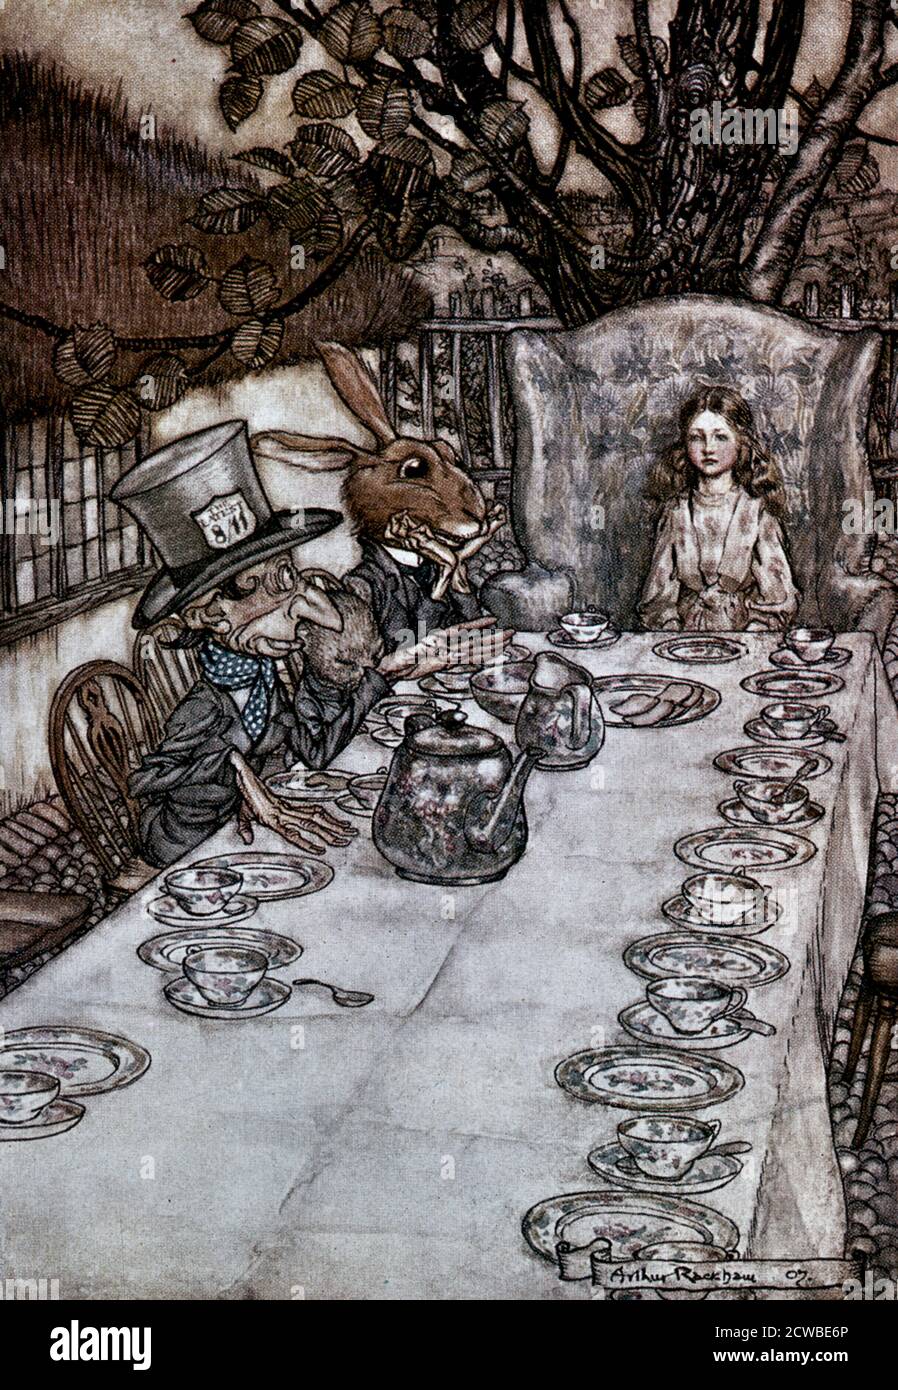 Alice in Wonderland', 1917 artiste : Arthur Rackham. Alice's Adventures in Wonderland est une œuvre de littérature pour enfants du mathématicien britannique Lewis Carroll. Banque D'Images